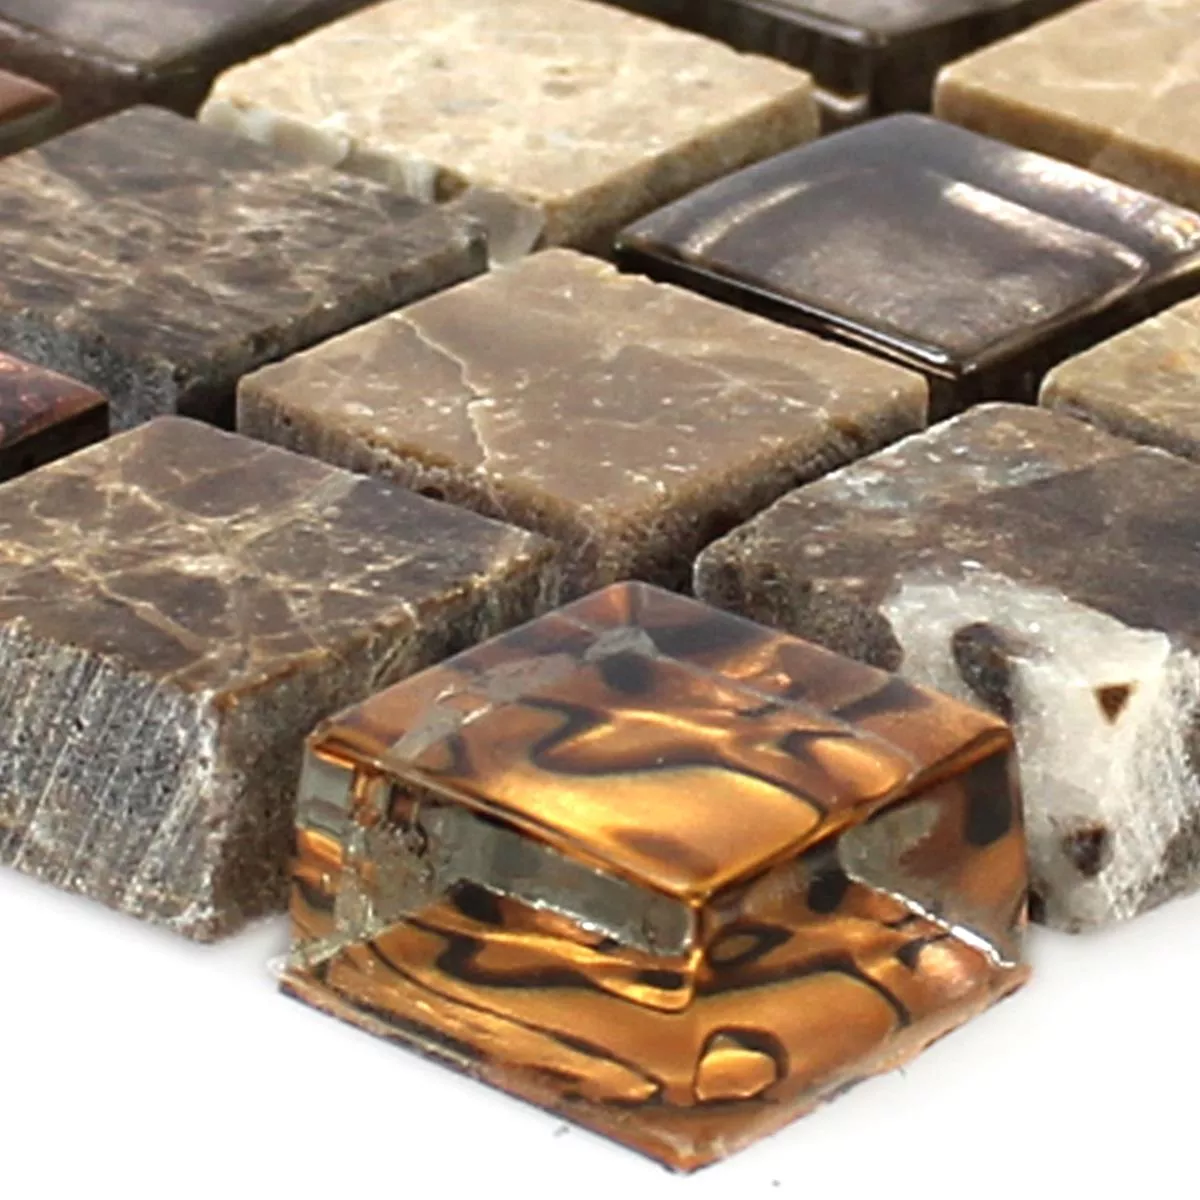 Muster von Mosaikfliesen Glas Naturstein Beige Braun 